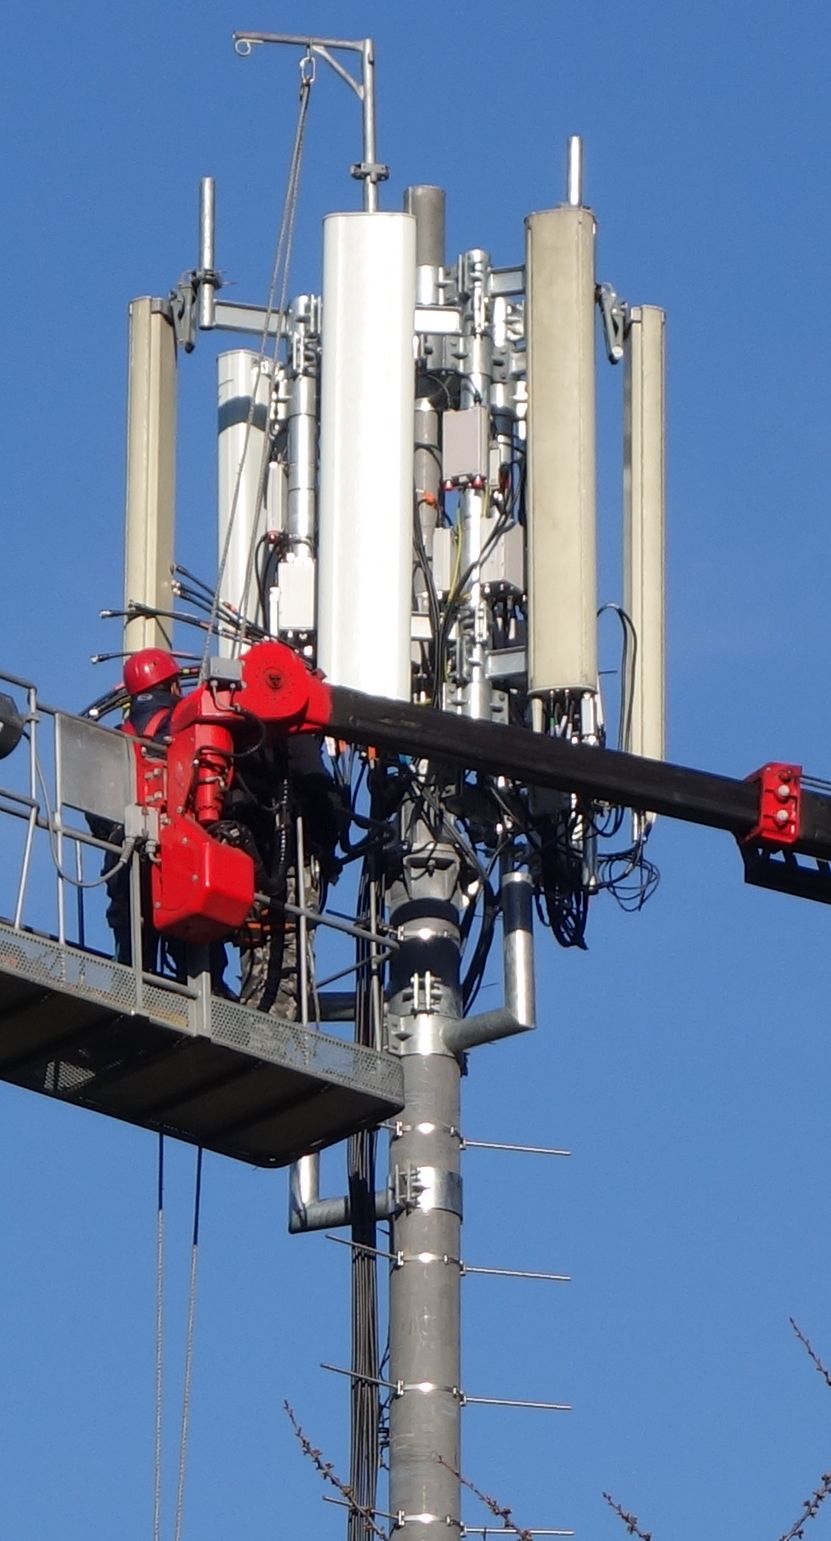 ES werden gerade die Antennen von Vodafone installiert. März 2016